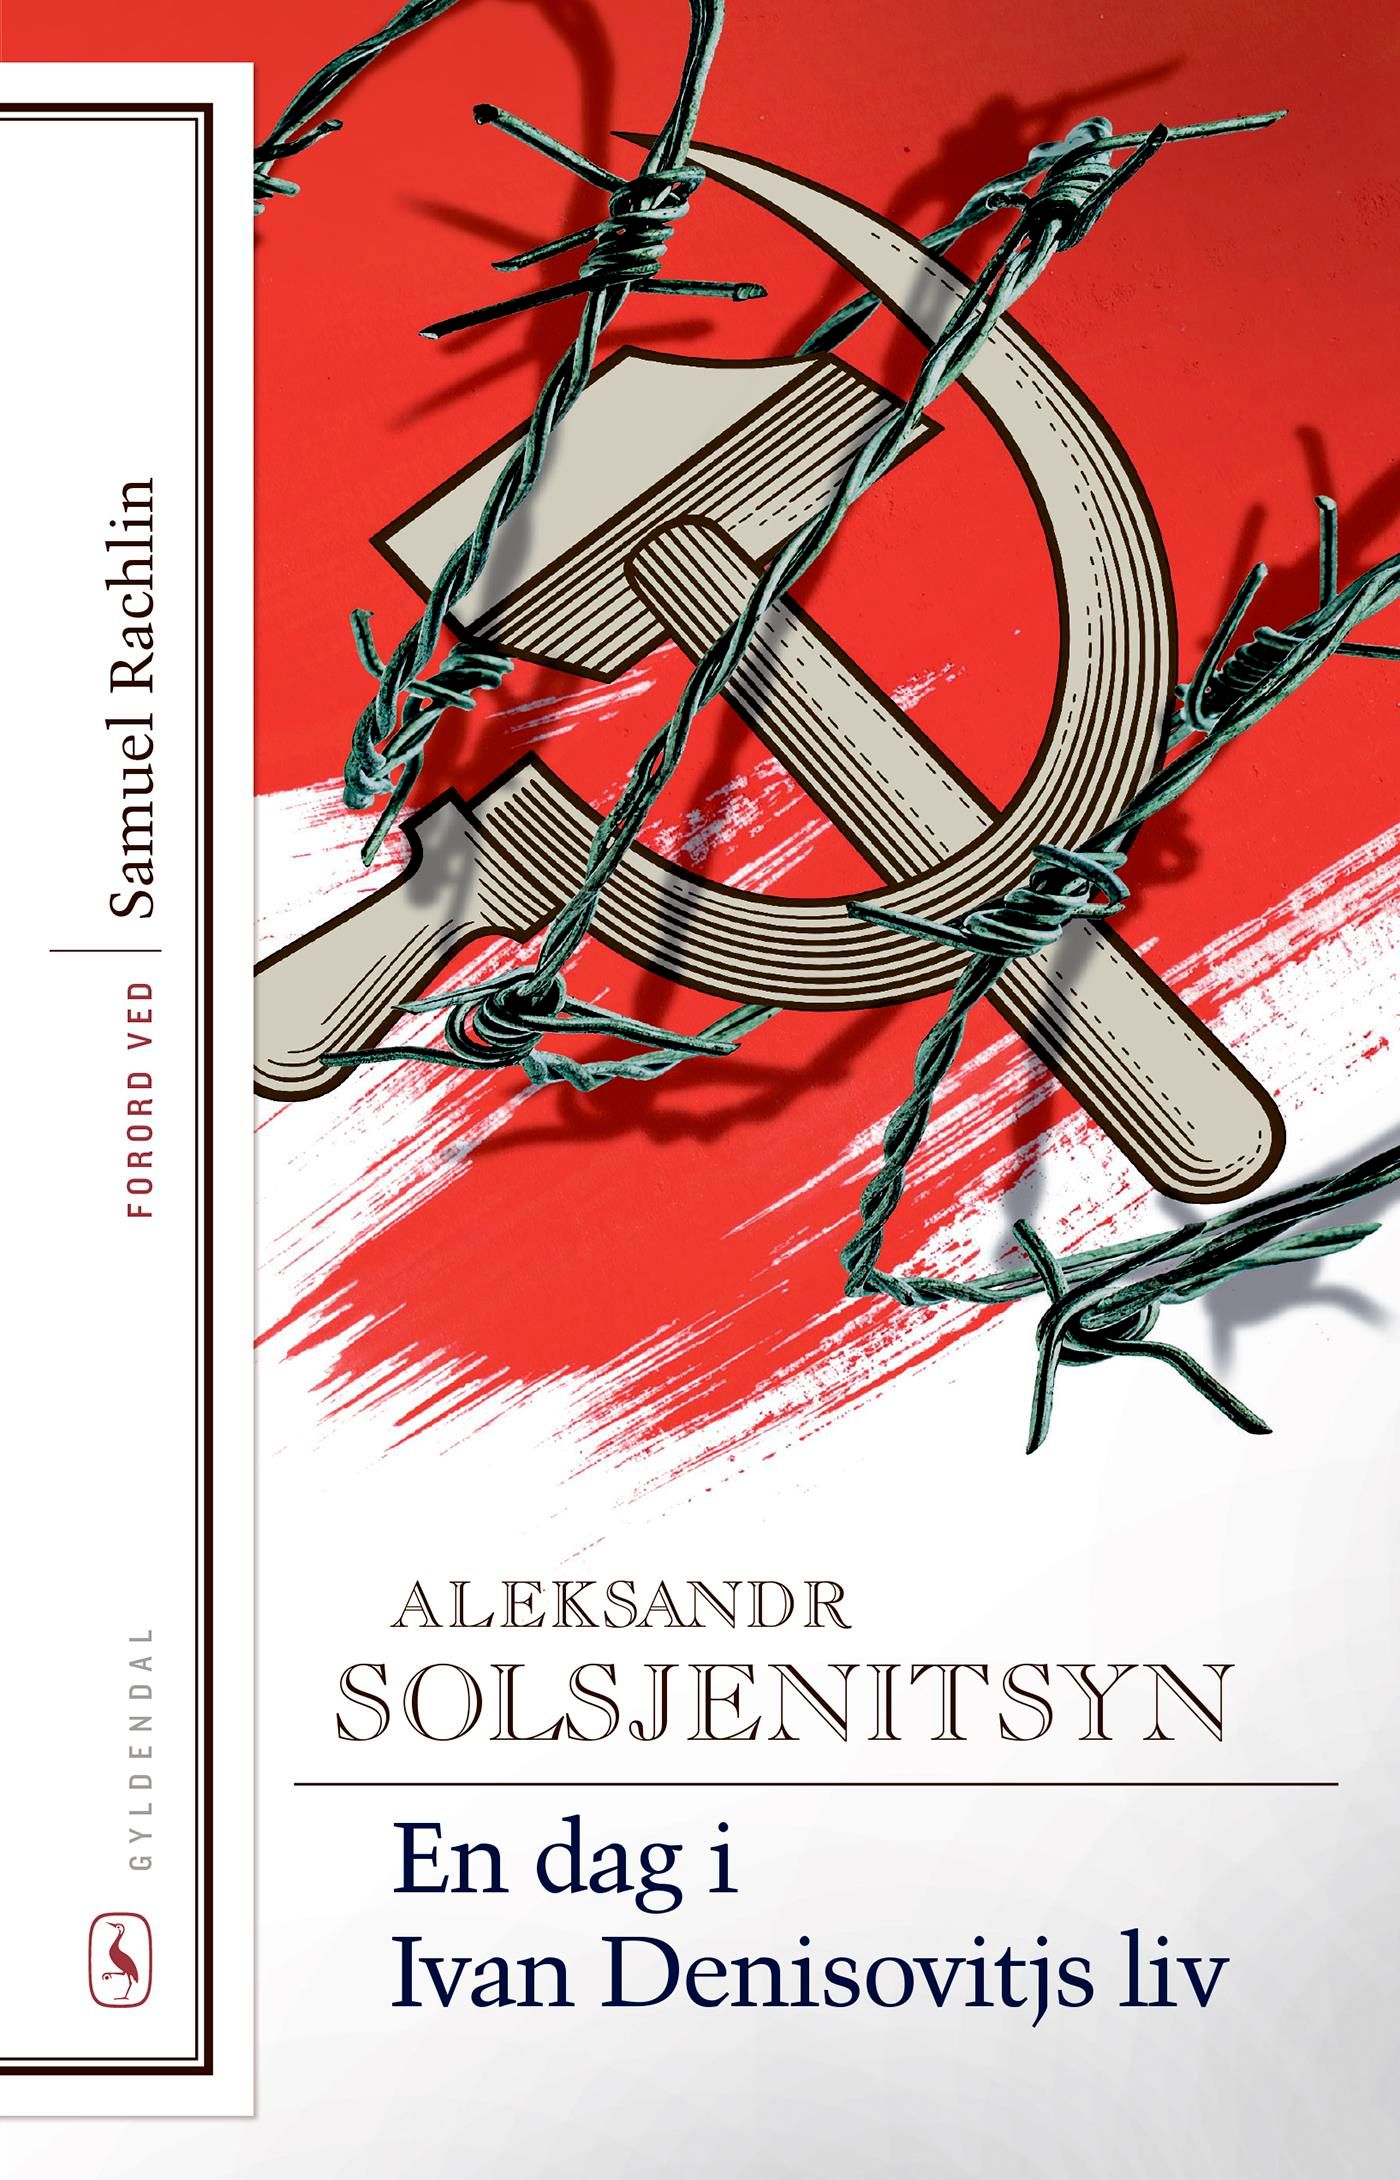 En dag i Ivan Denisovitjs liv, e-bog af Aleksandr Solsjenitsyn